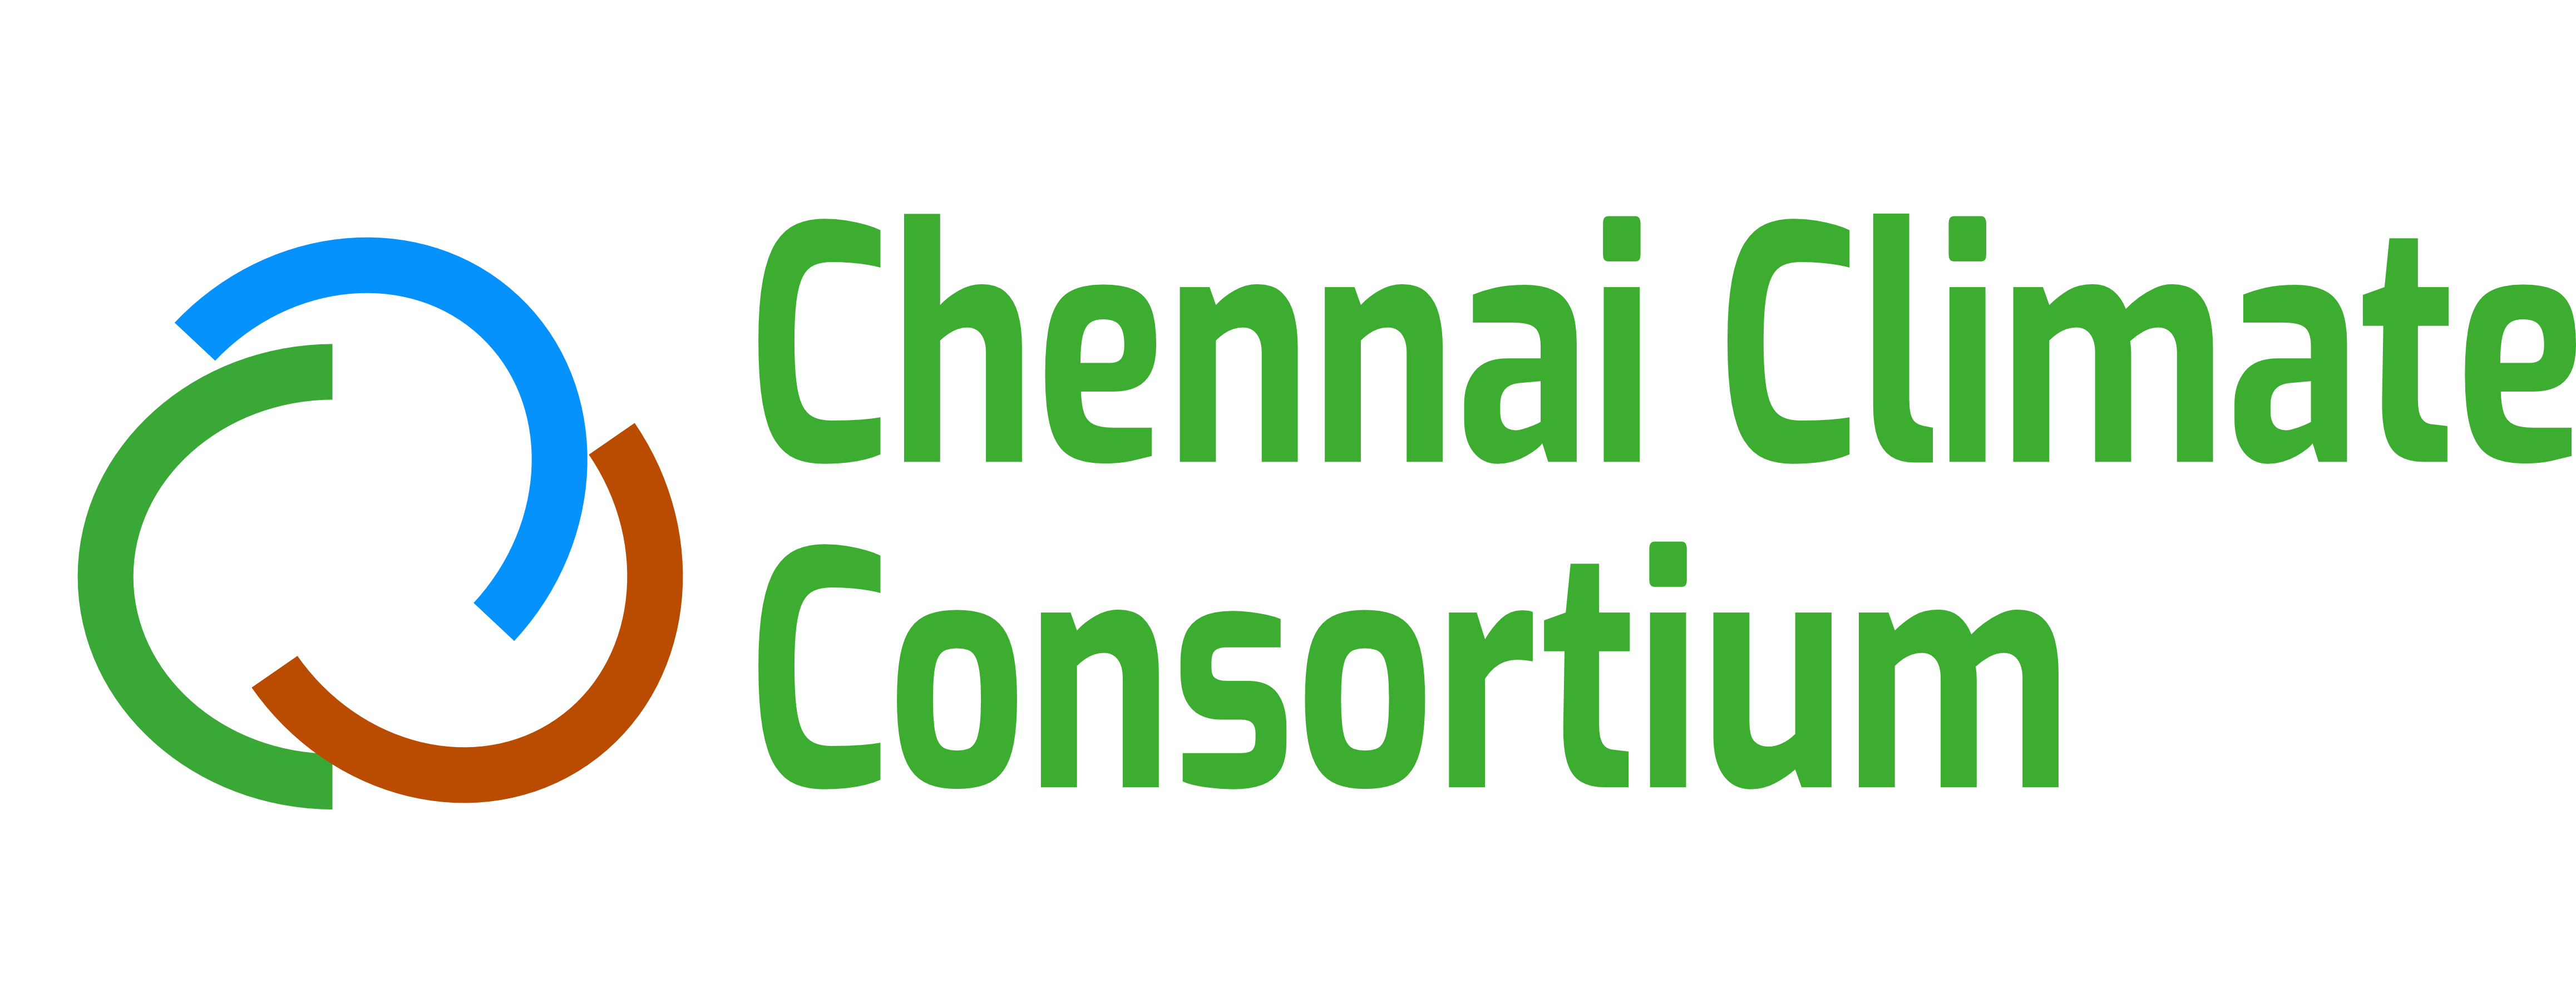 Chennai Climate Consortium Image